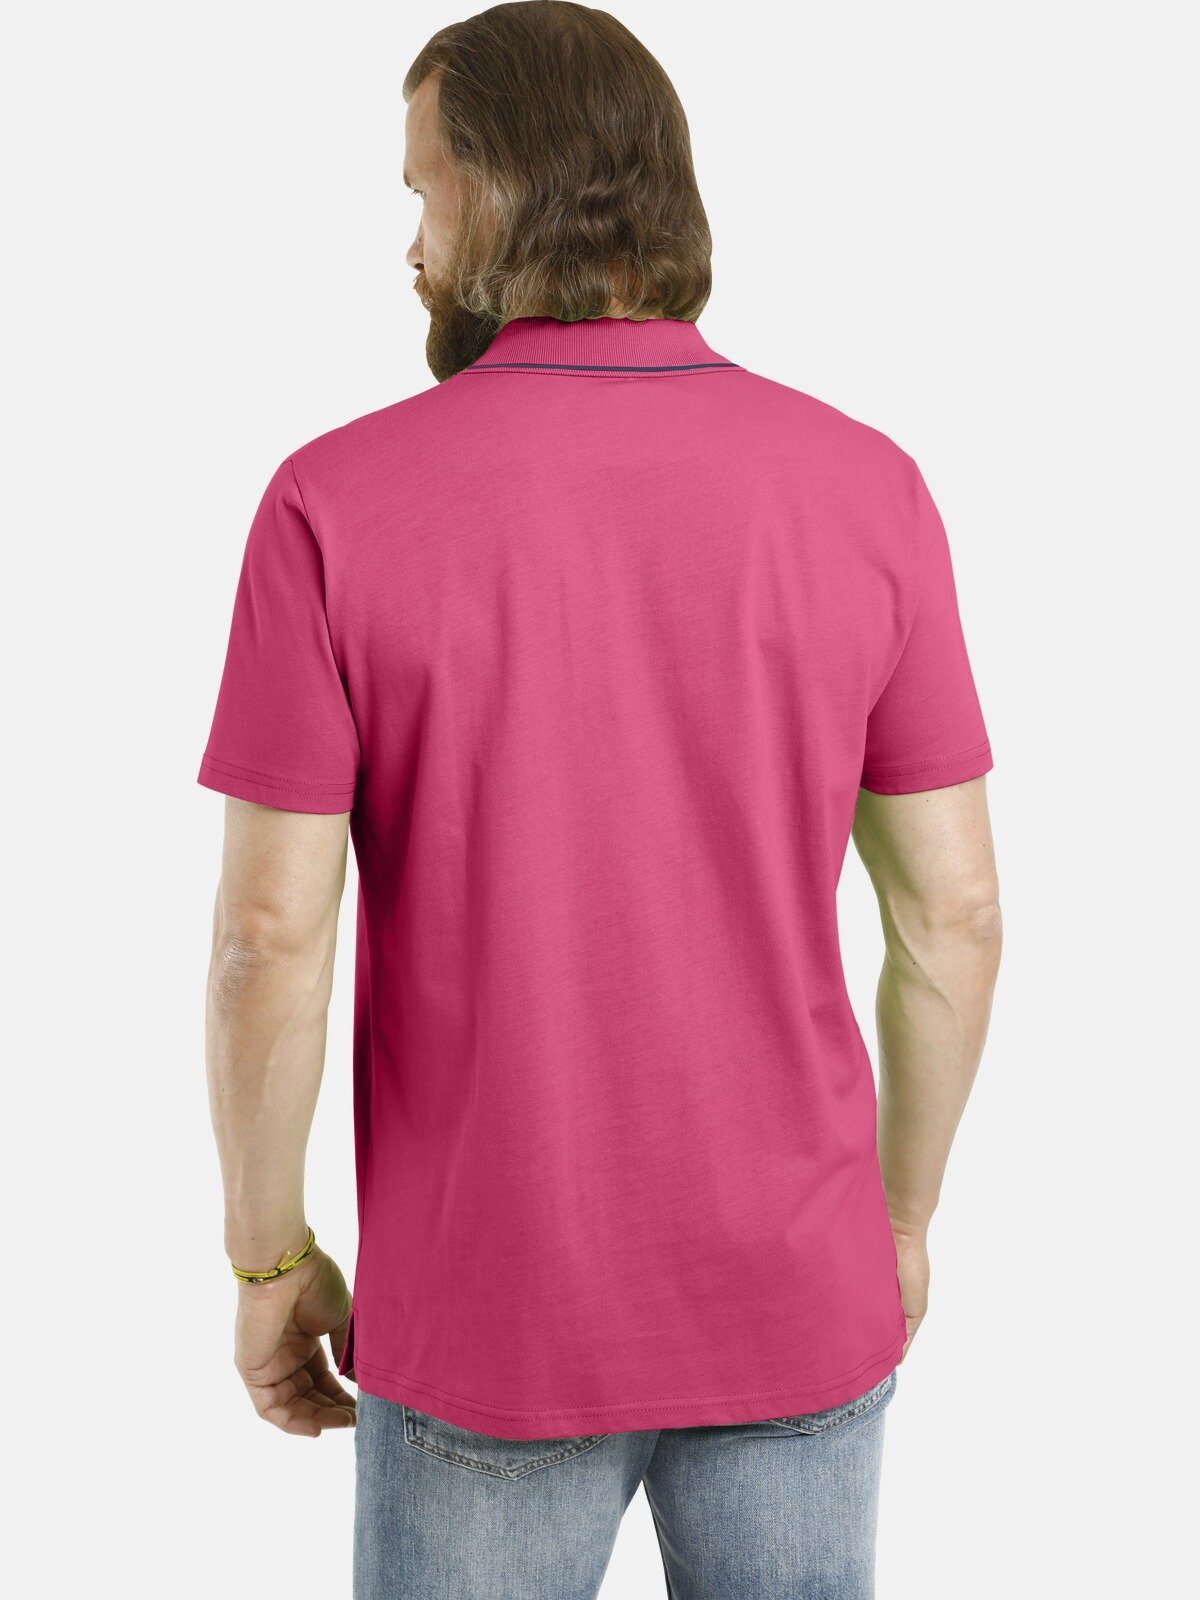 Jan Vanderstorm Poloshirt NANFRED aus hochwertiger pink Baumwolle